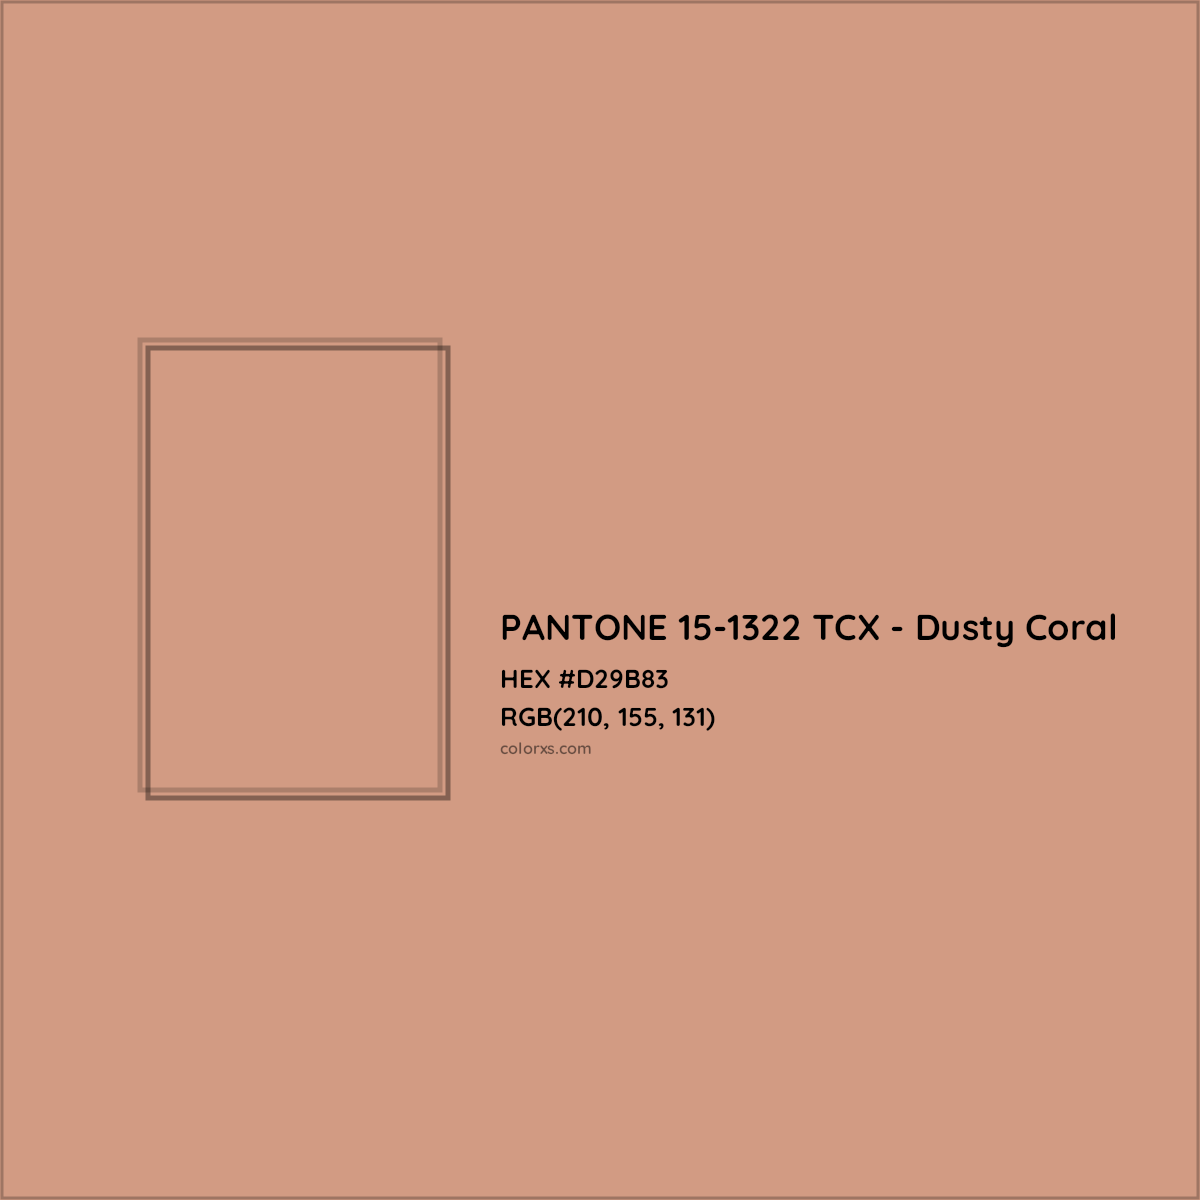 HEX #D29B83 PANTONE 15-1322 TCX - Dusty Coral CMS Pantone TCX - Color Code